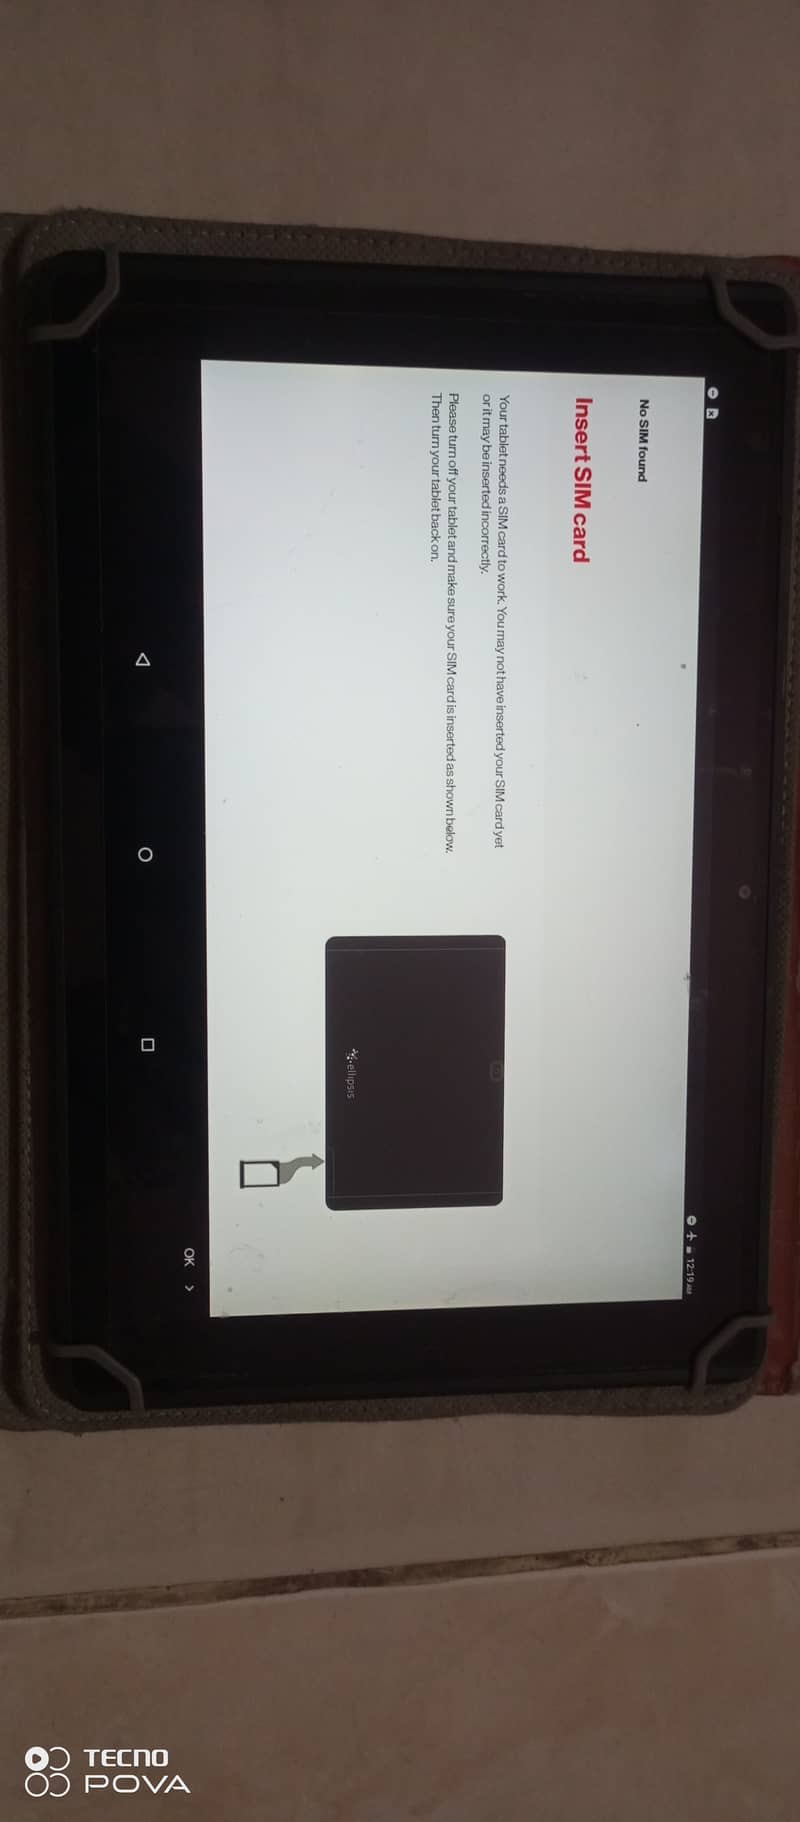 Ellipsis tablet 10 inch display 9000 mah battery 32 gb memory 4 gb ram 4